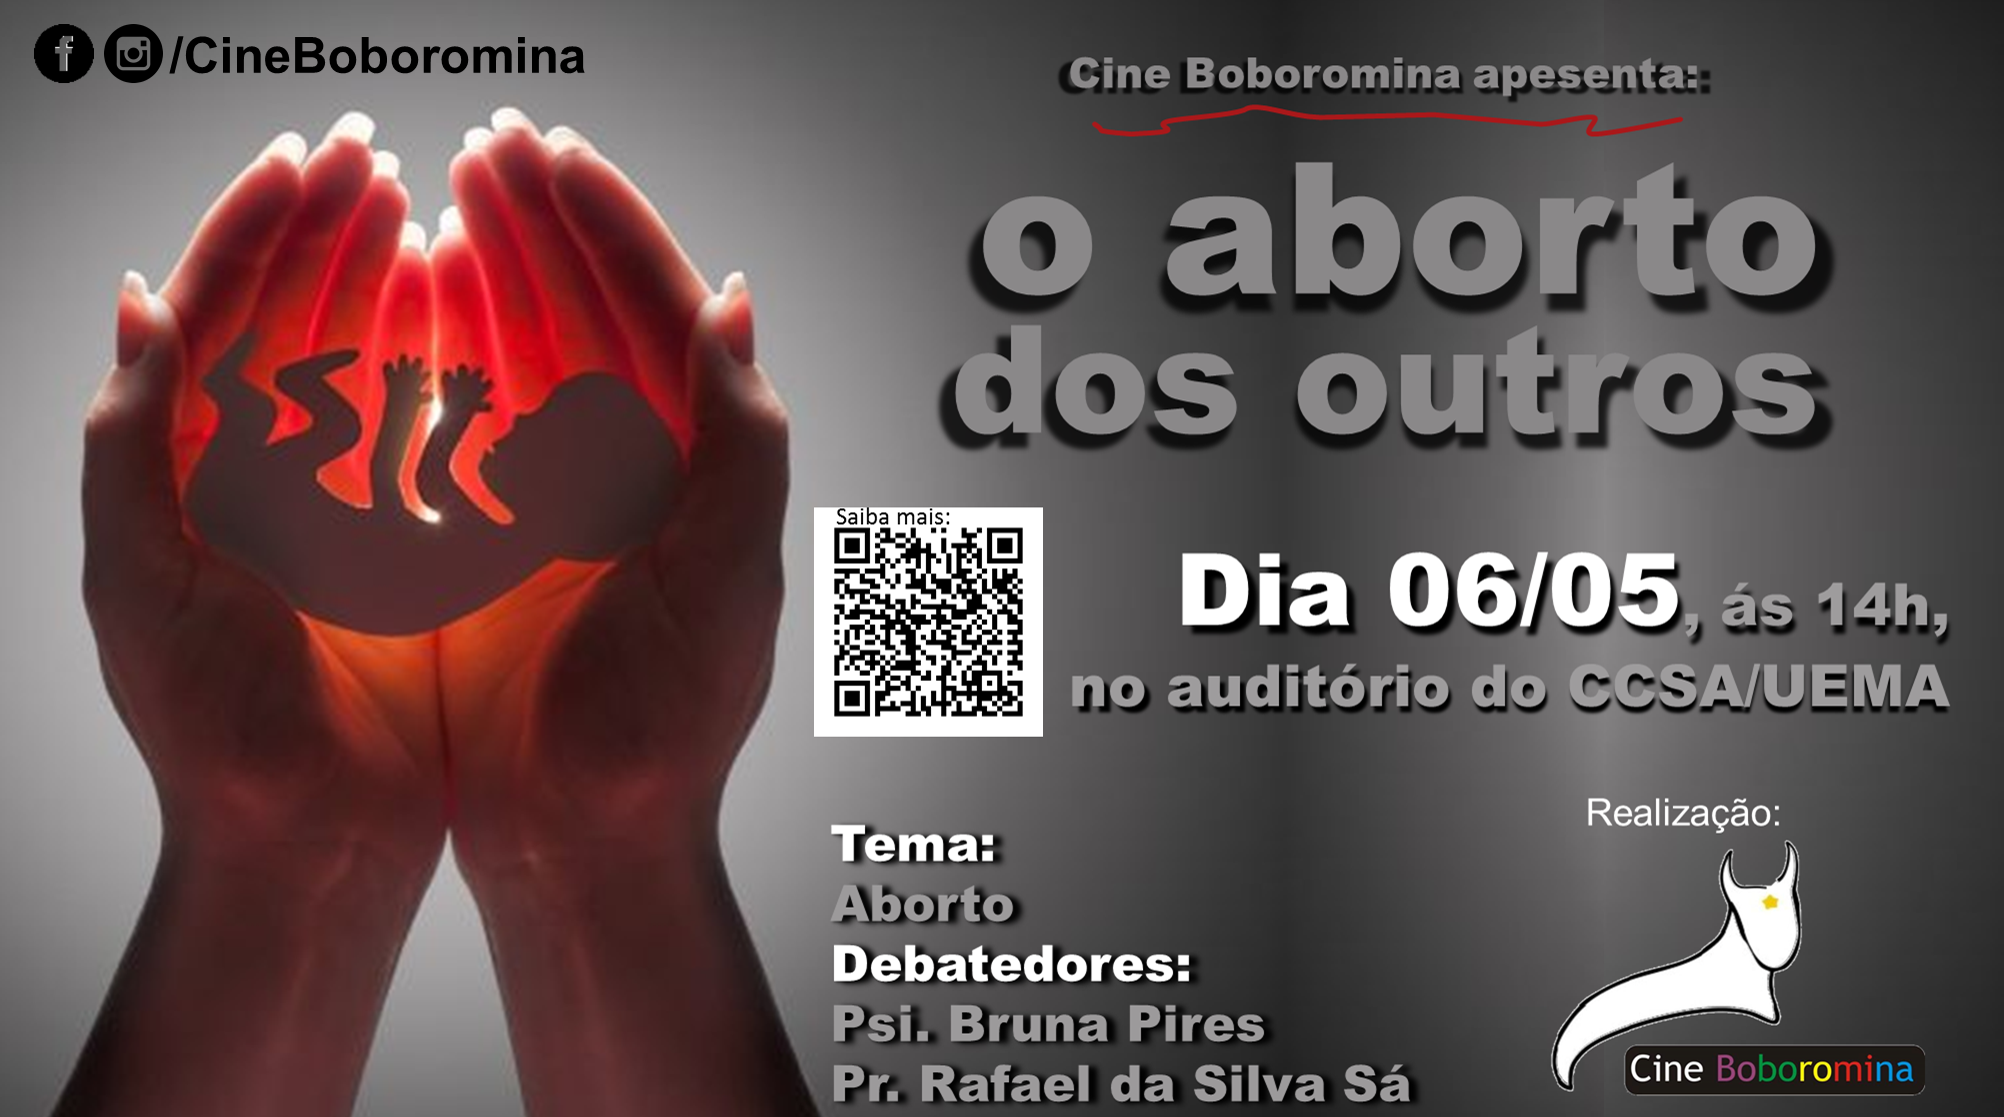 Cine Boboromina exibirá “O aborto dos outros” na próxima semana